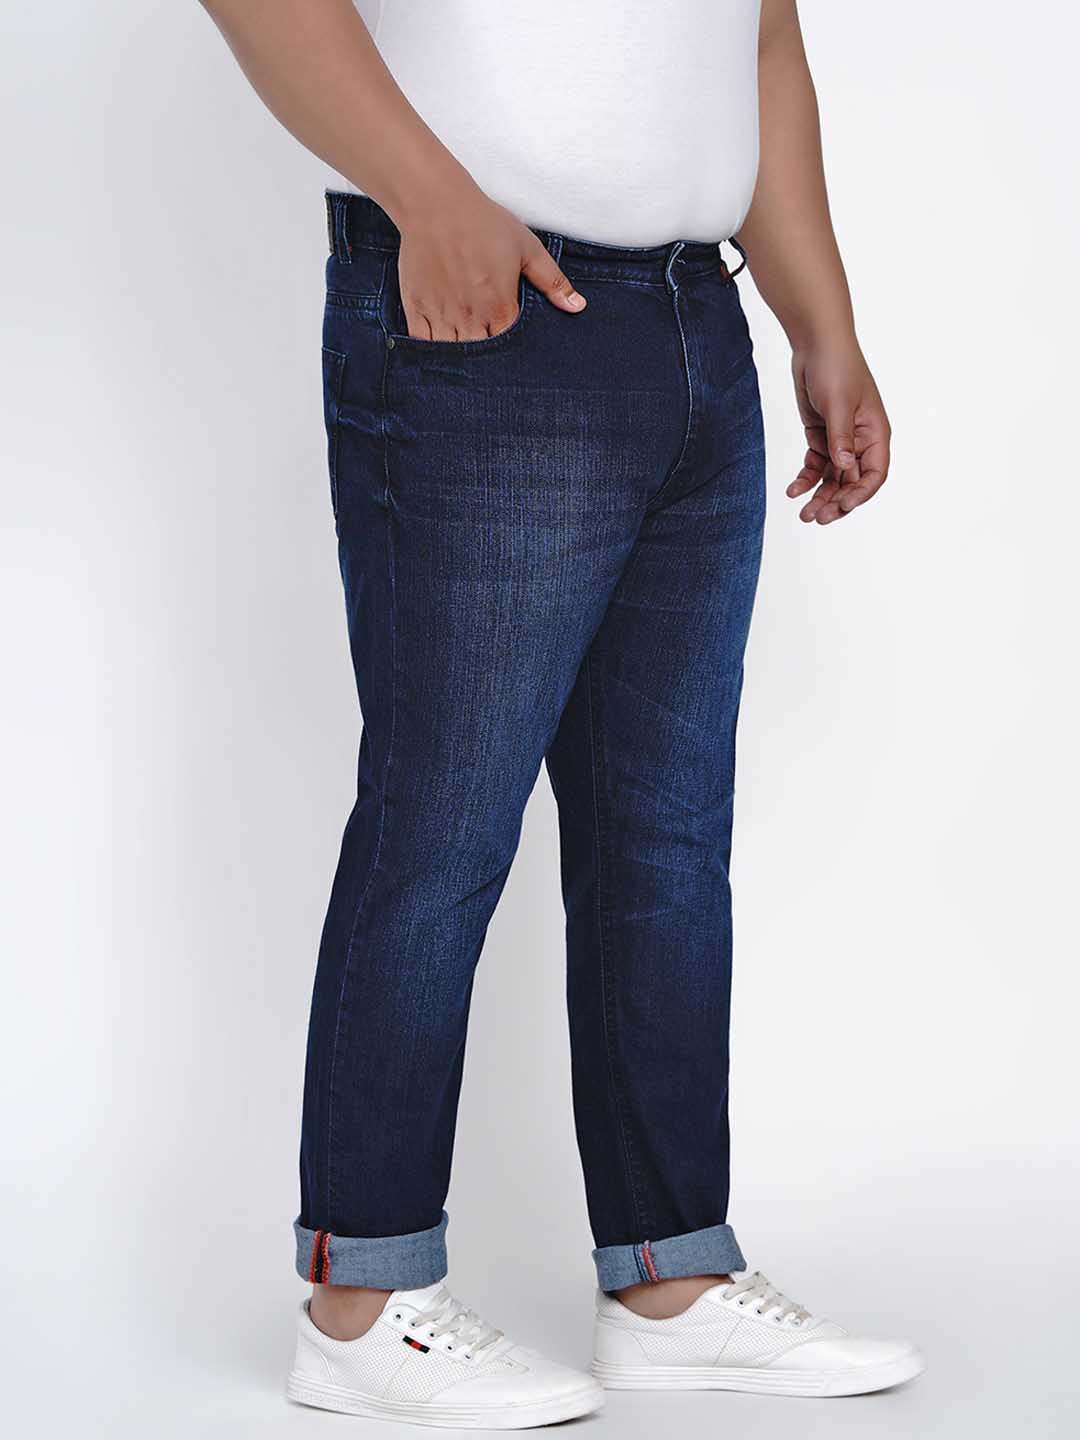 affordables/jeans/JPJ2006/jpj2006-4.jpg